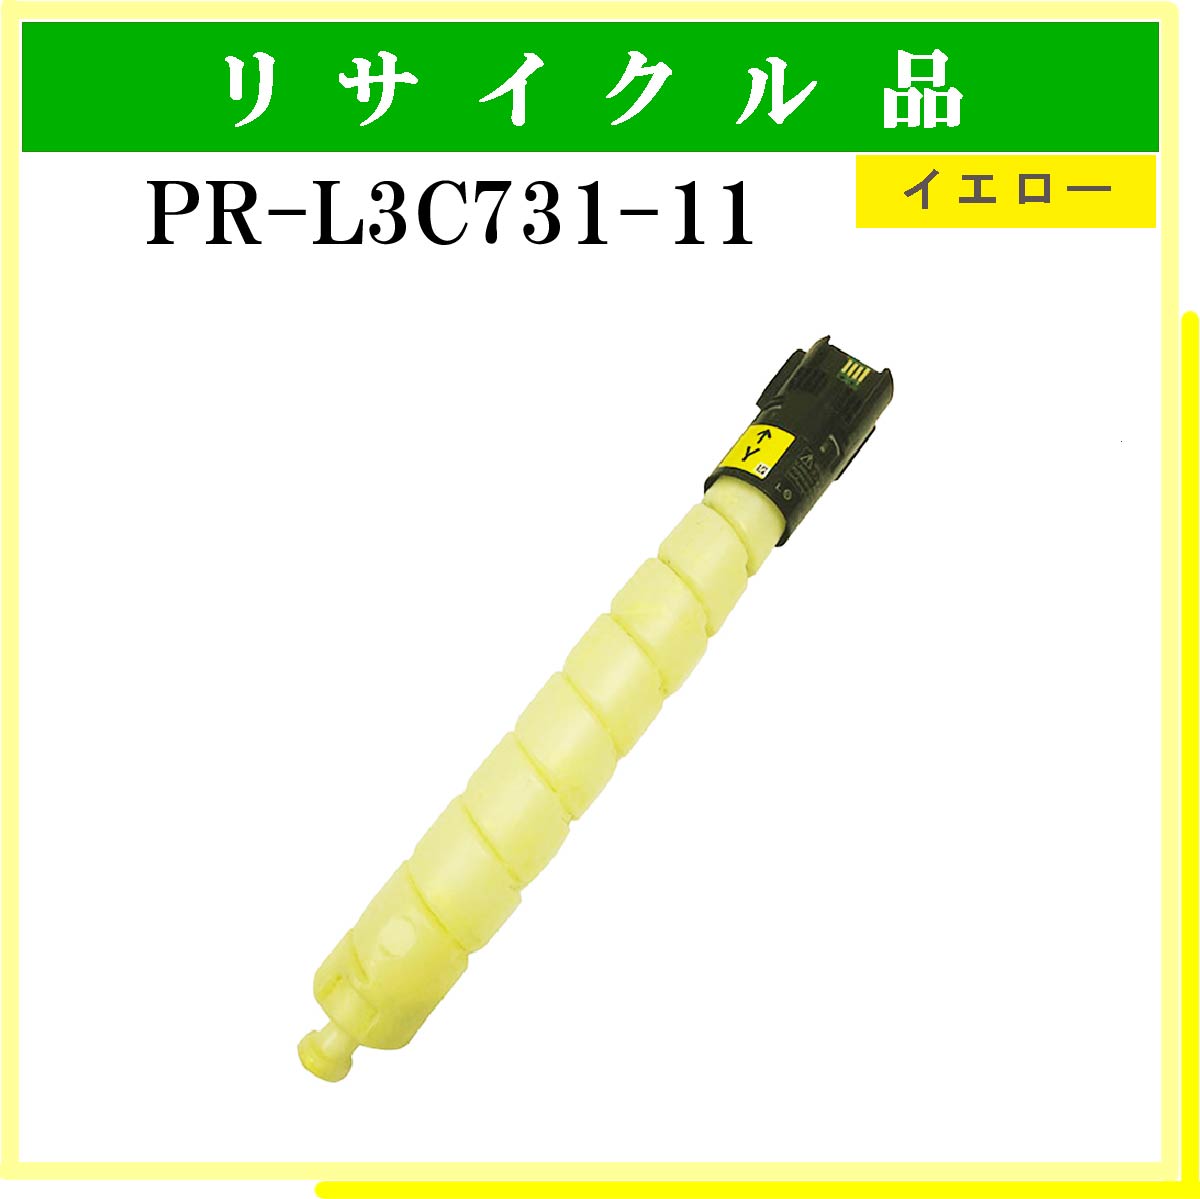 PR-L3C731-11